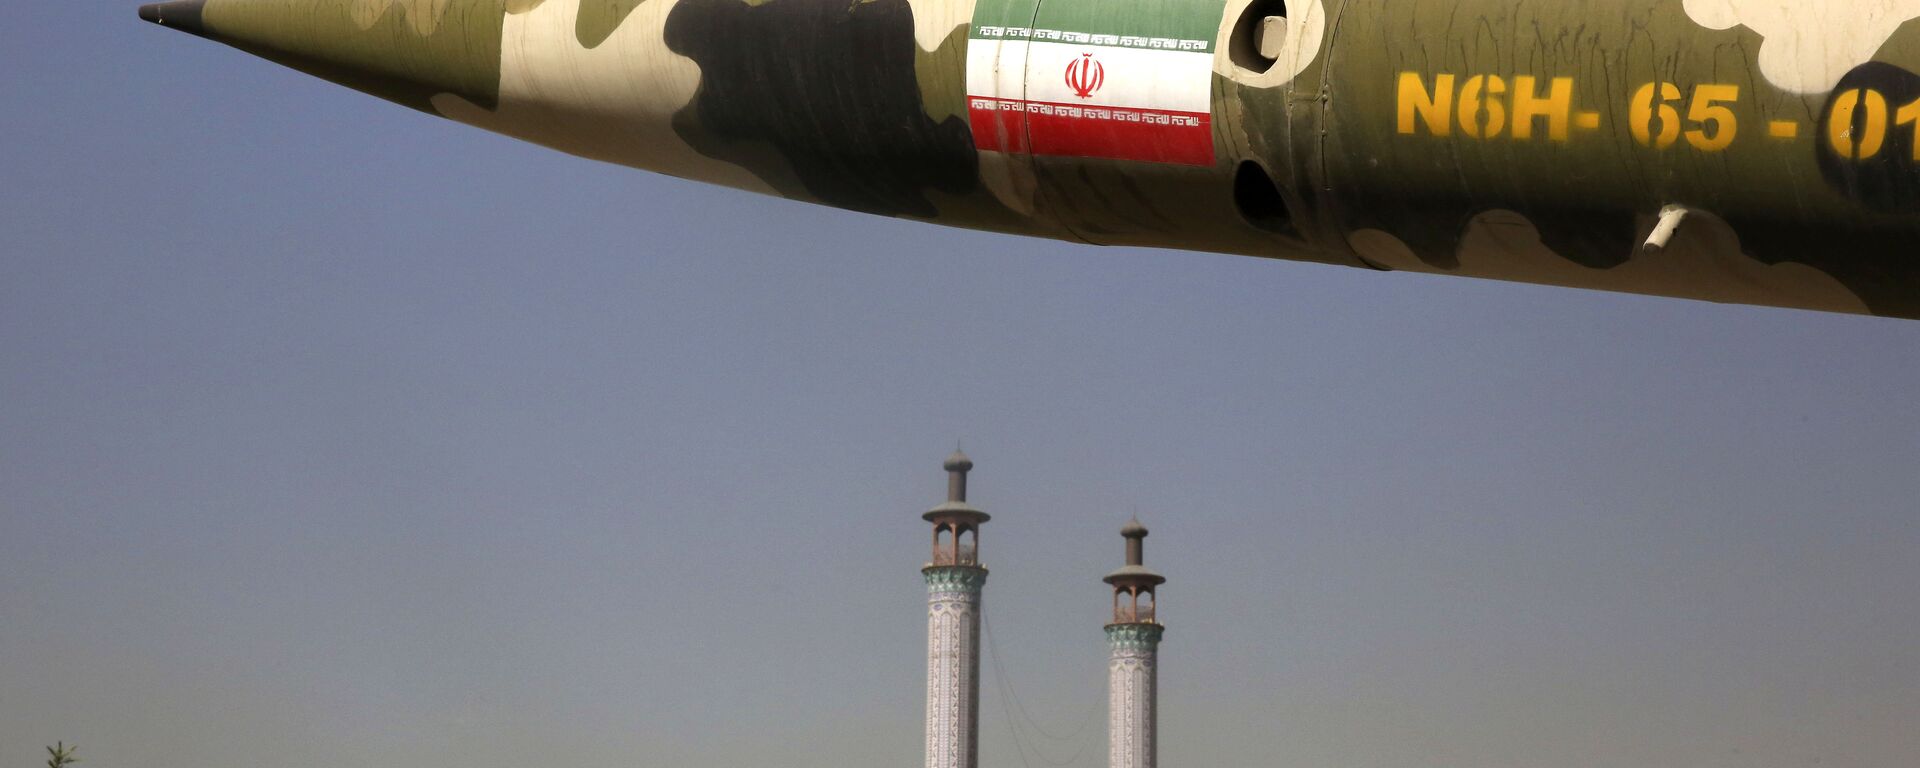 Chương trình tên lửa của nước Iran - Sputnik Việt Nam, 1920, 02.12.2020